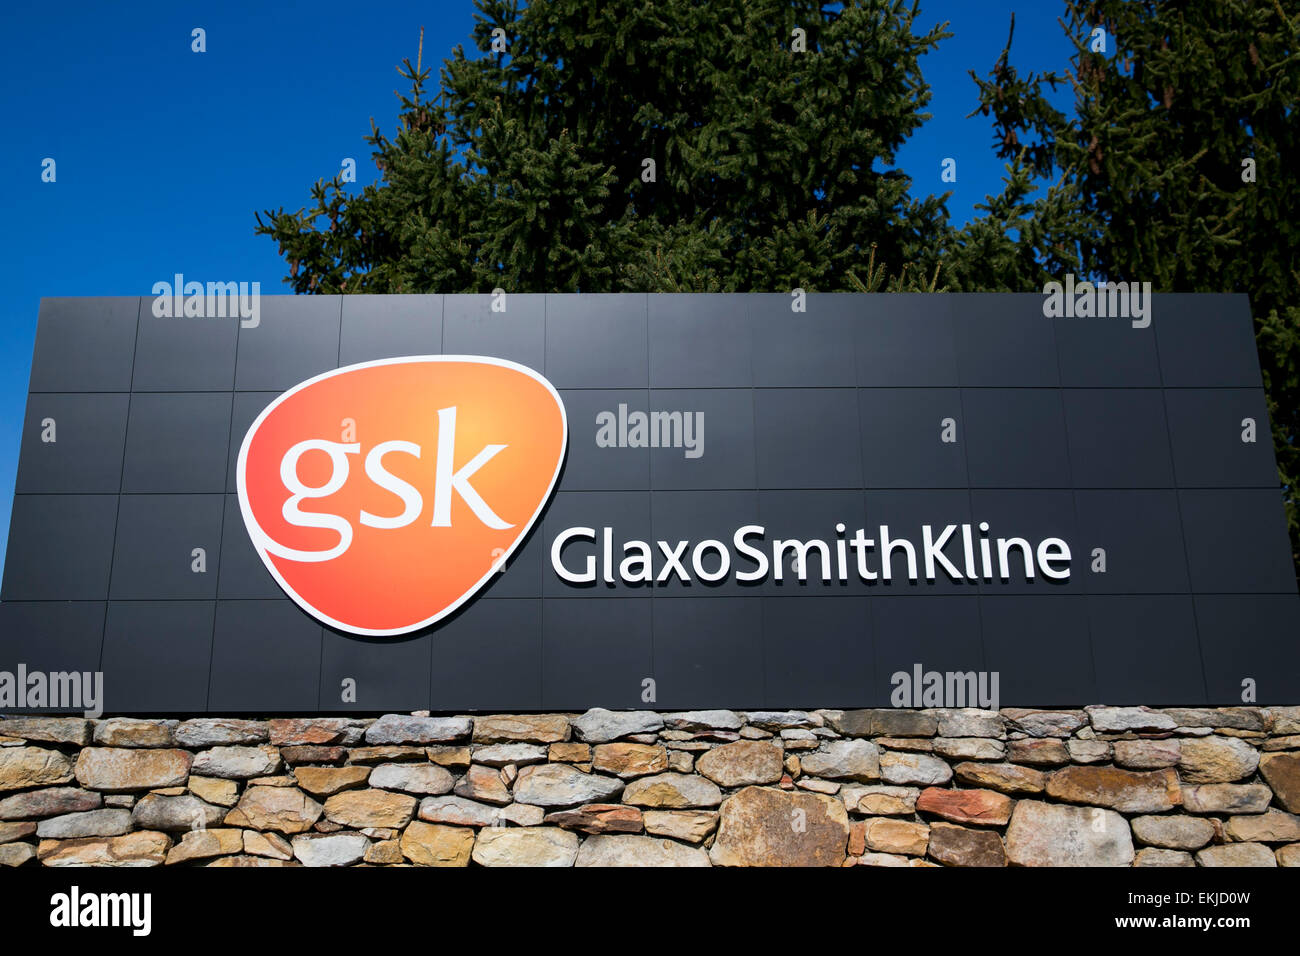 Une installation exploitée par la société pharmaceutique GlaxoSmithKline. Banque D'Images